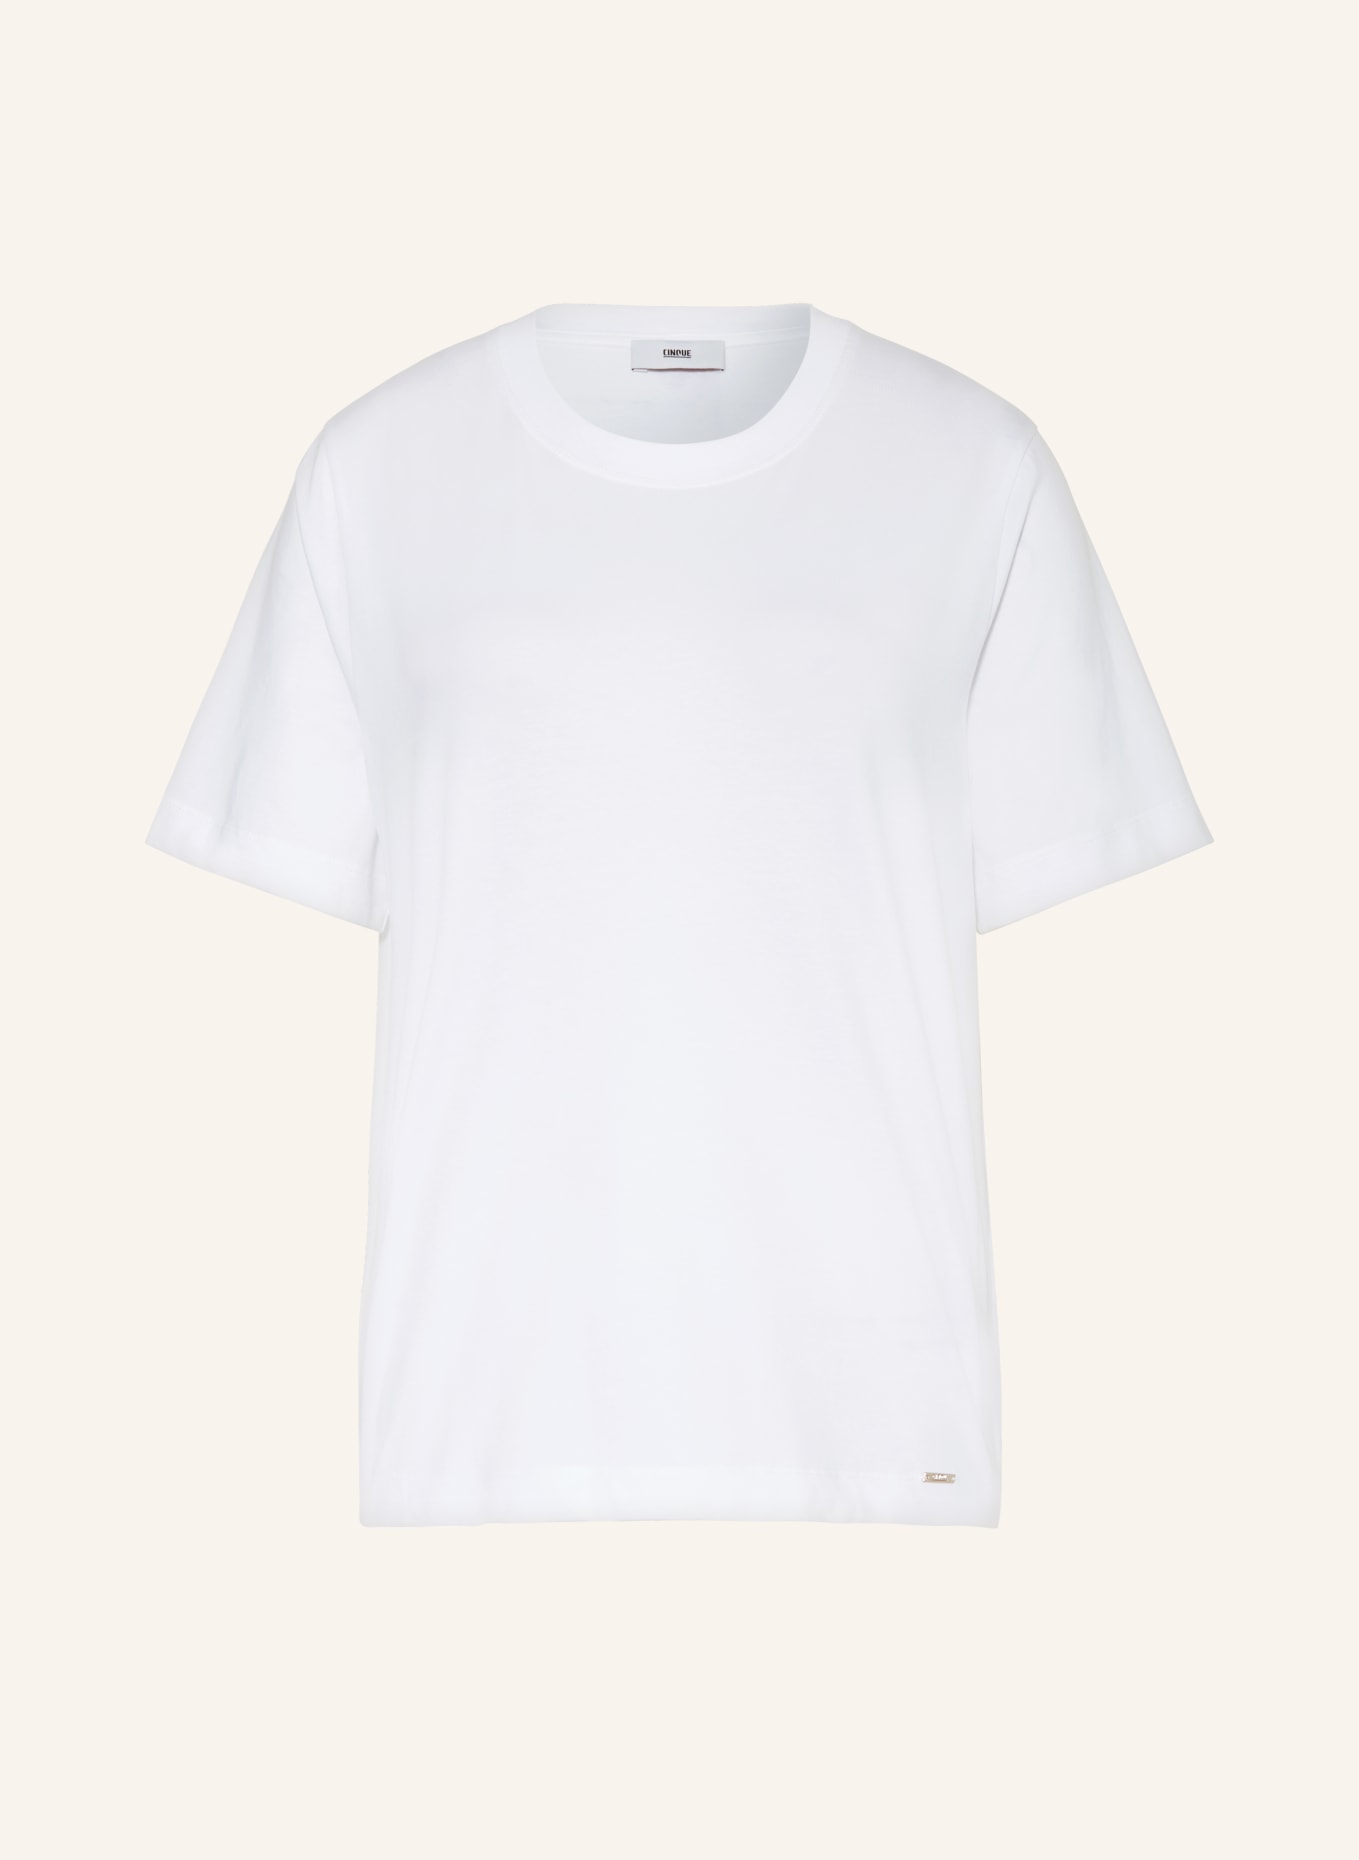 CINQUE T-shirt CITANA, Color: WHITE (Image 1)